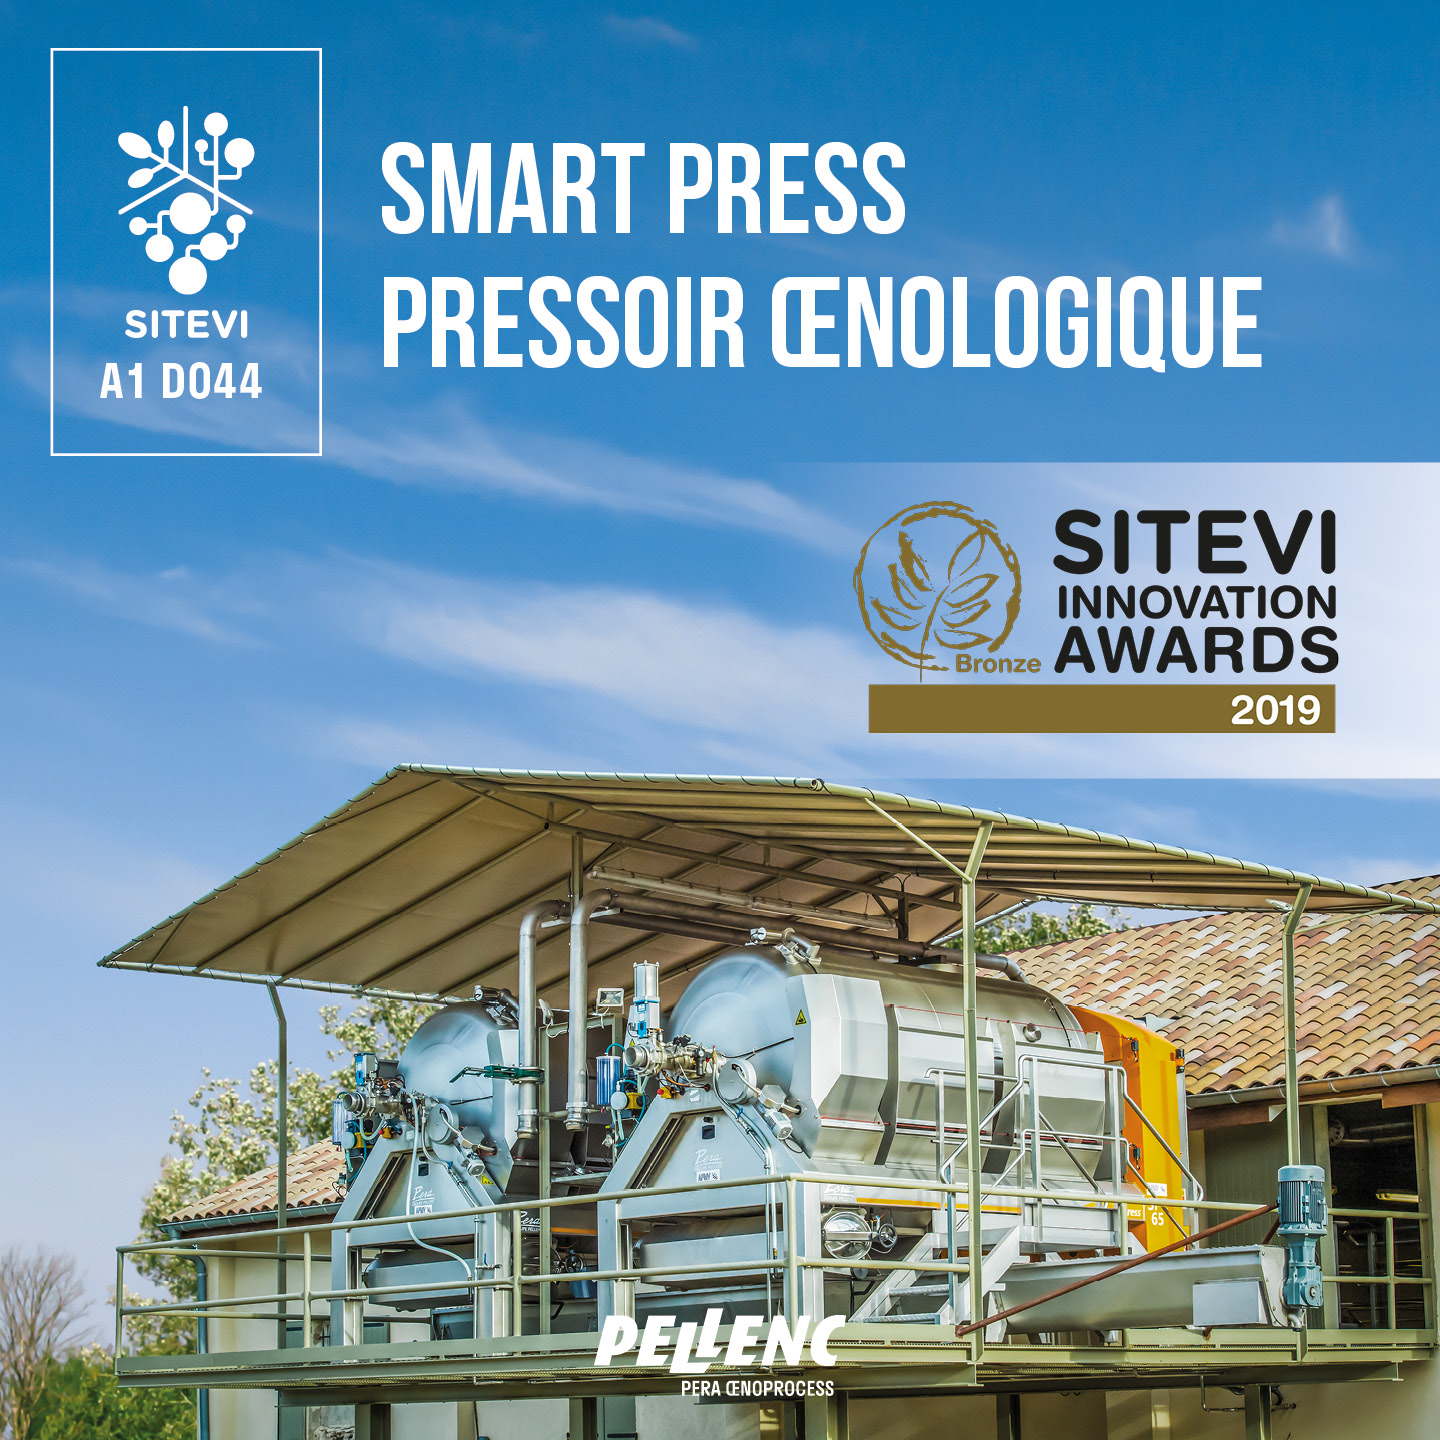 Le pressoir œnologique Smart Press